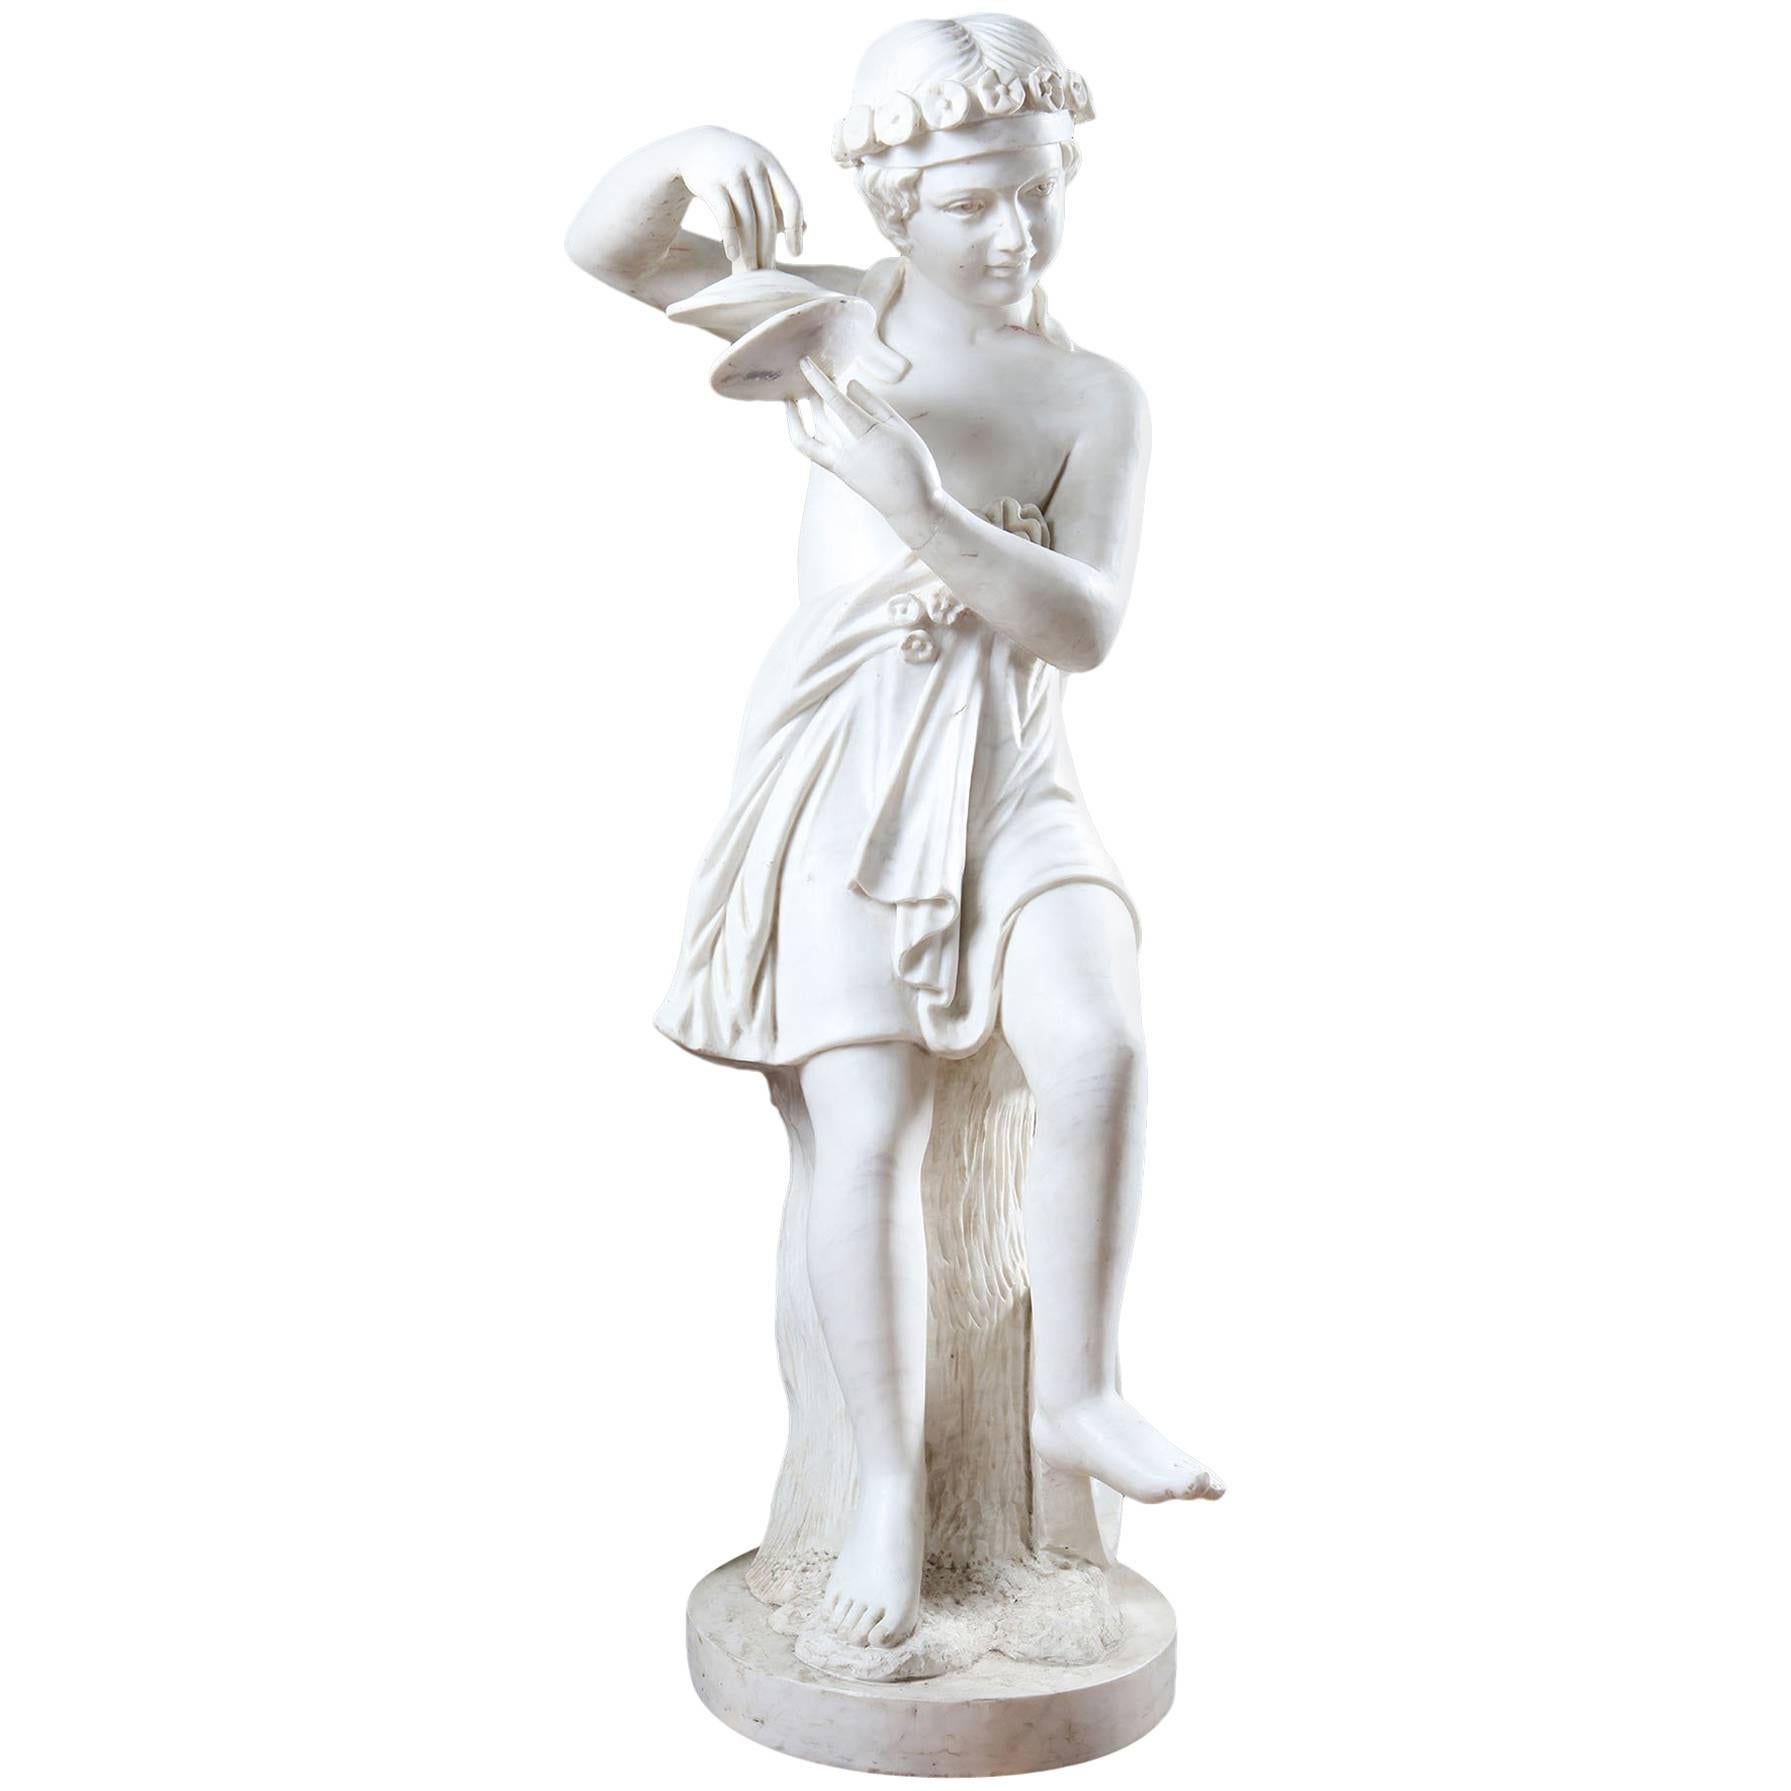 Statue en marbre statuaire d'un enfant personnifiant la musique